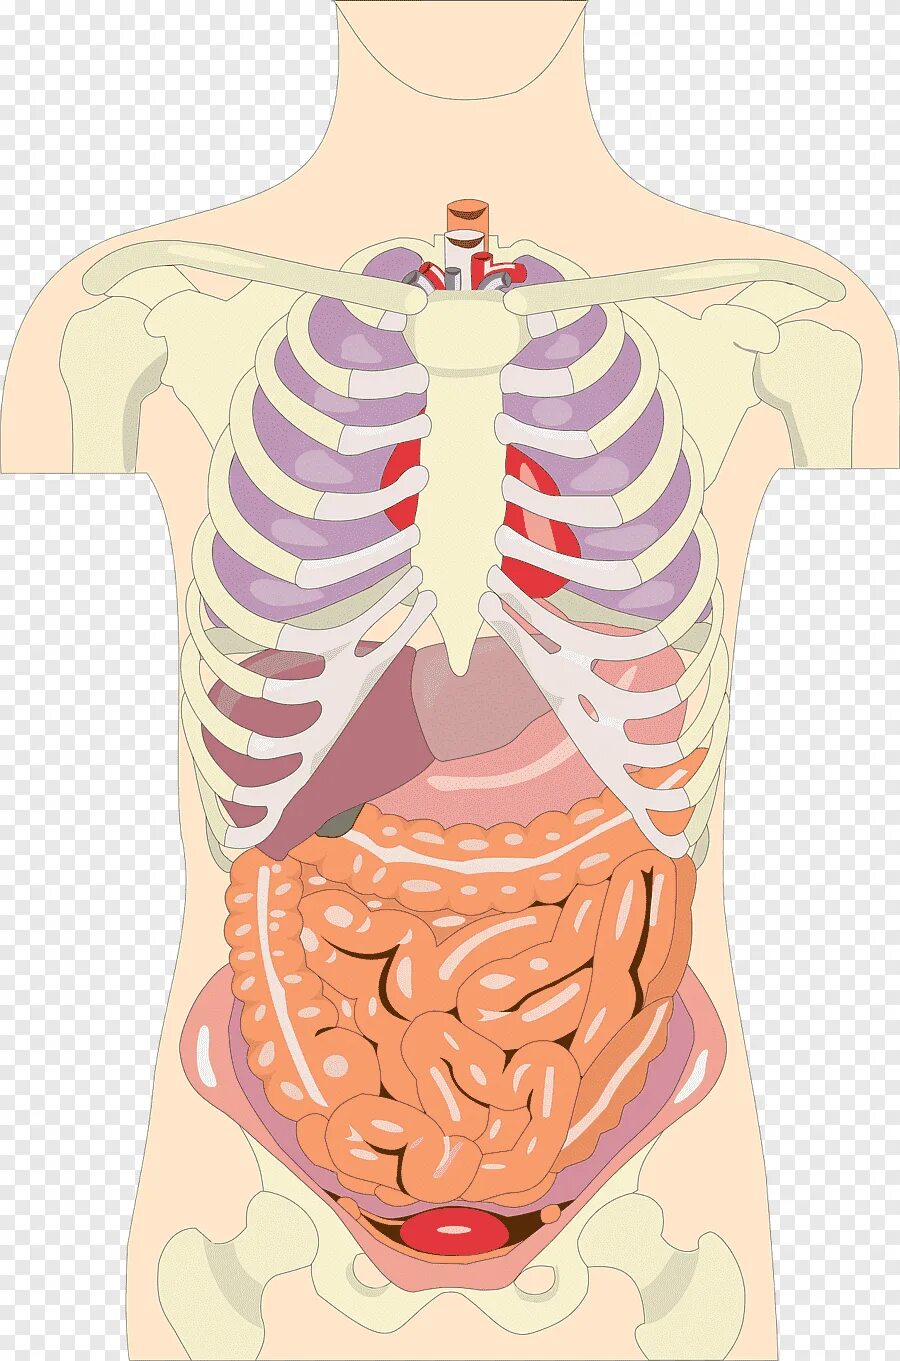 Органы человека с ребрами. Внутренние органы. Внутренниеиорганы человека. Органы человека. Тело человека внутренние органы.